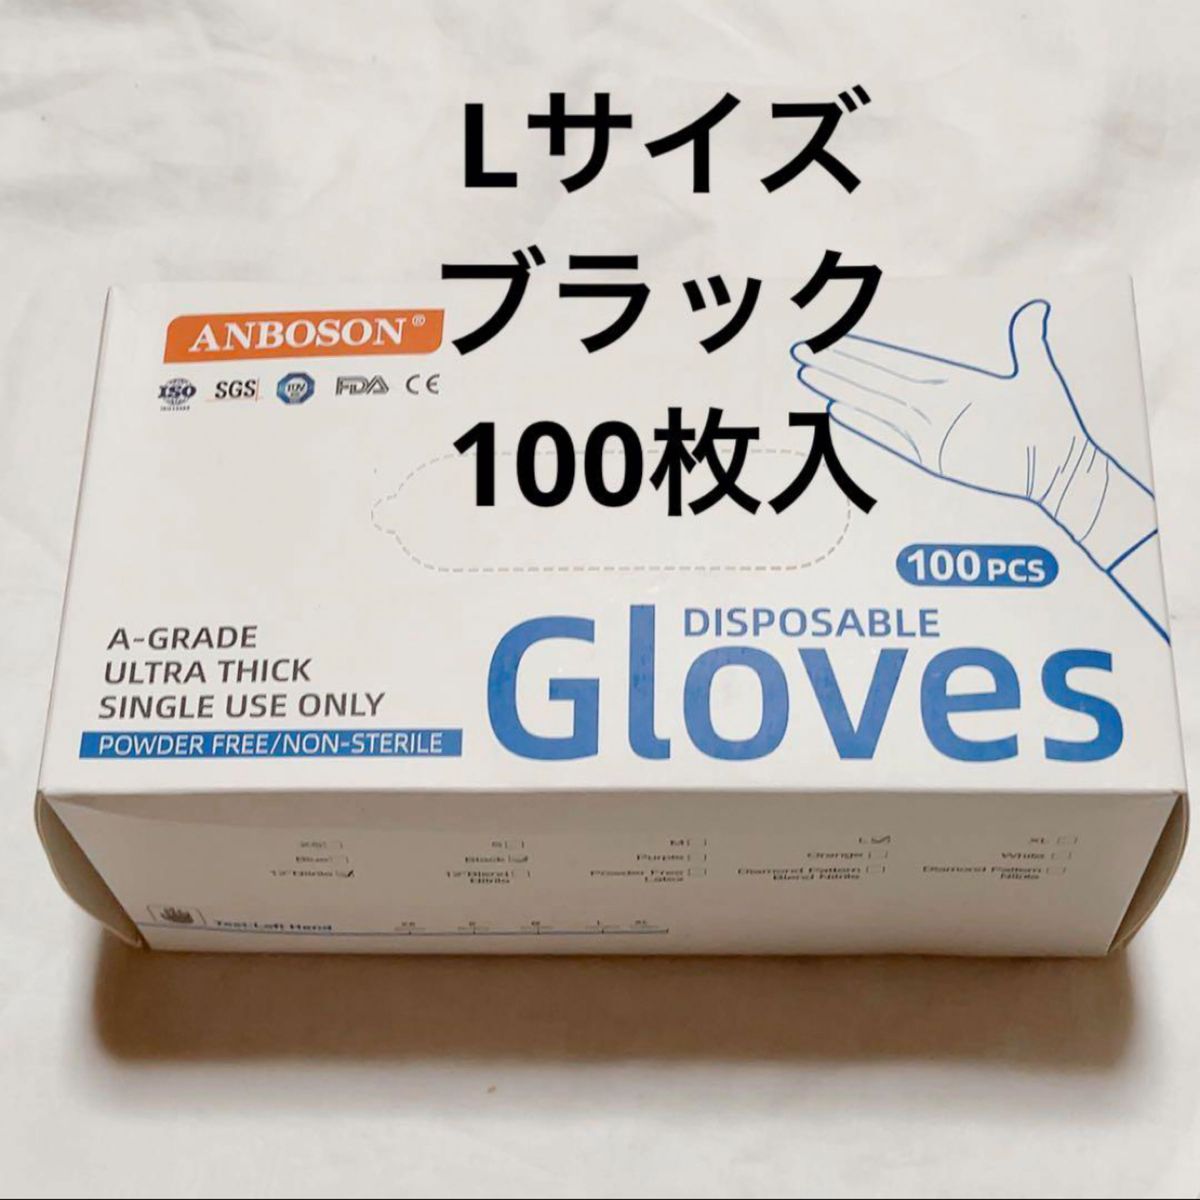 『即購入可』ニトリル手袋 100枚 安心 使い捨て手袋 抗菌 予防対策 黒